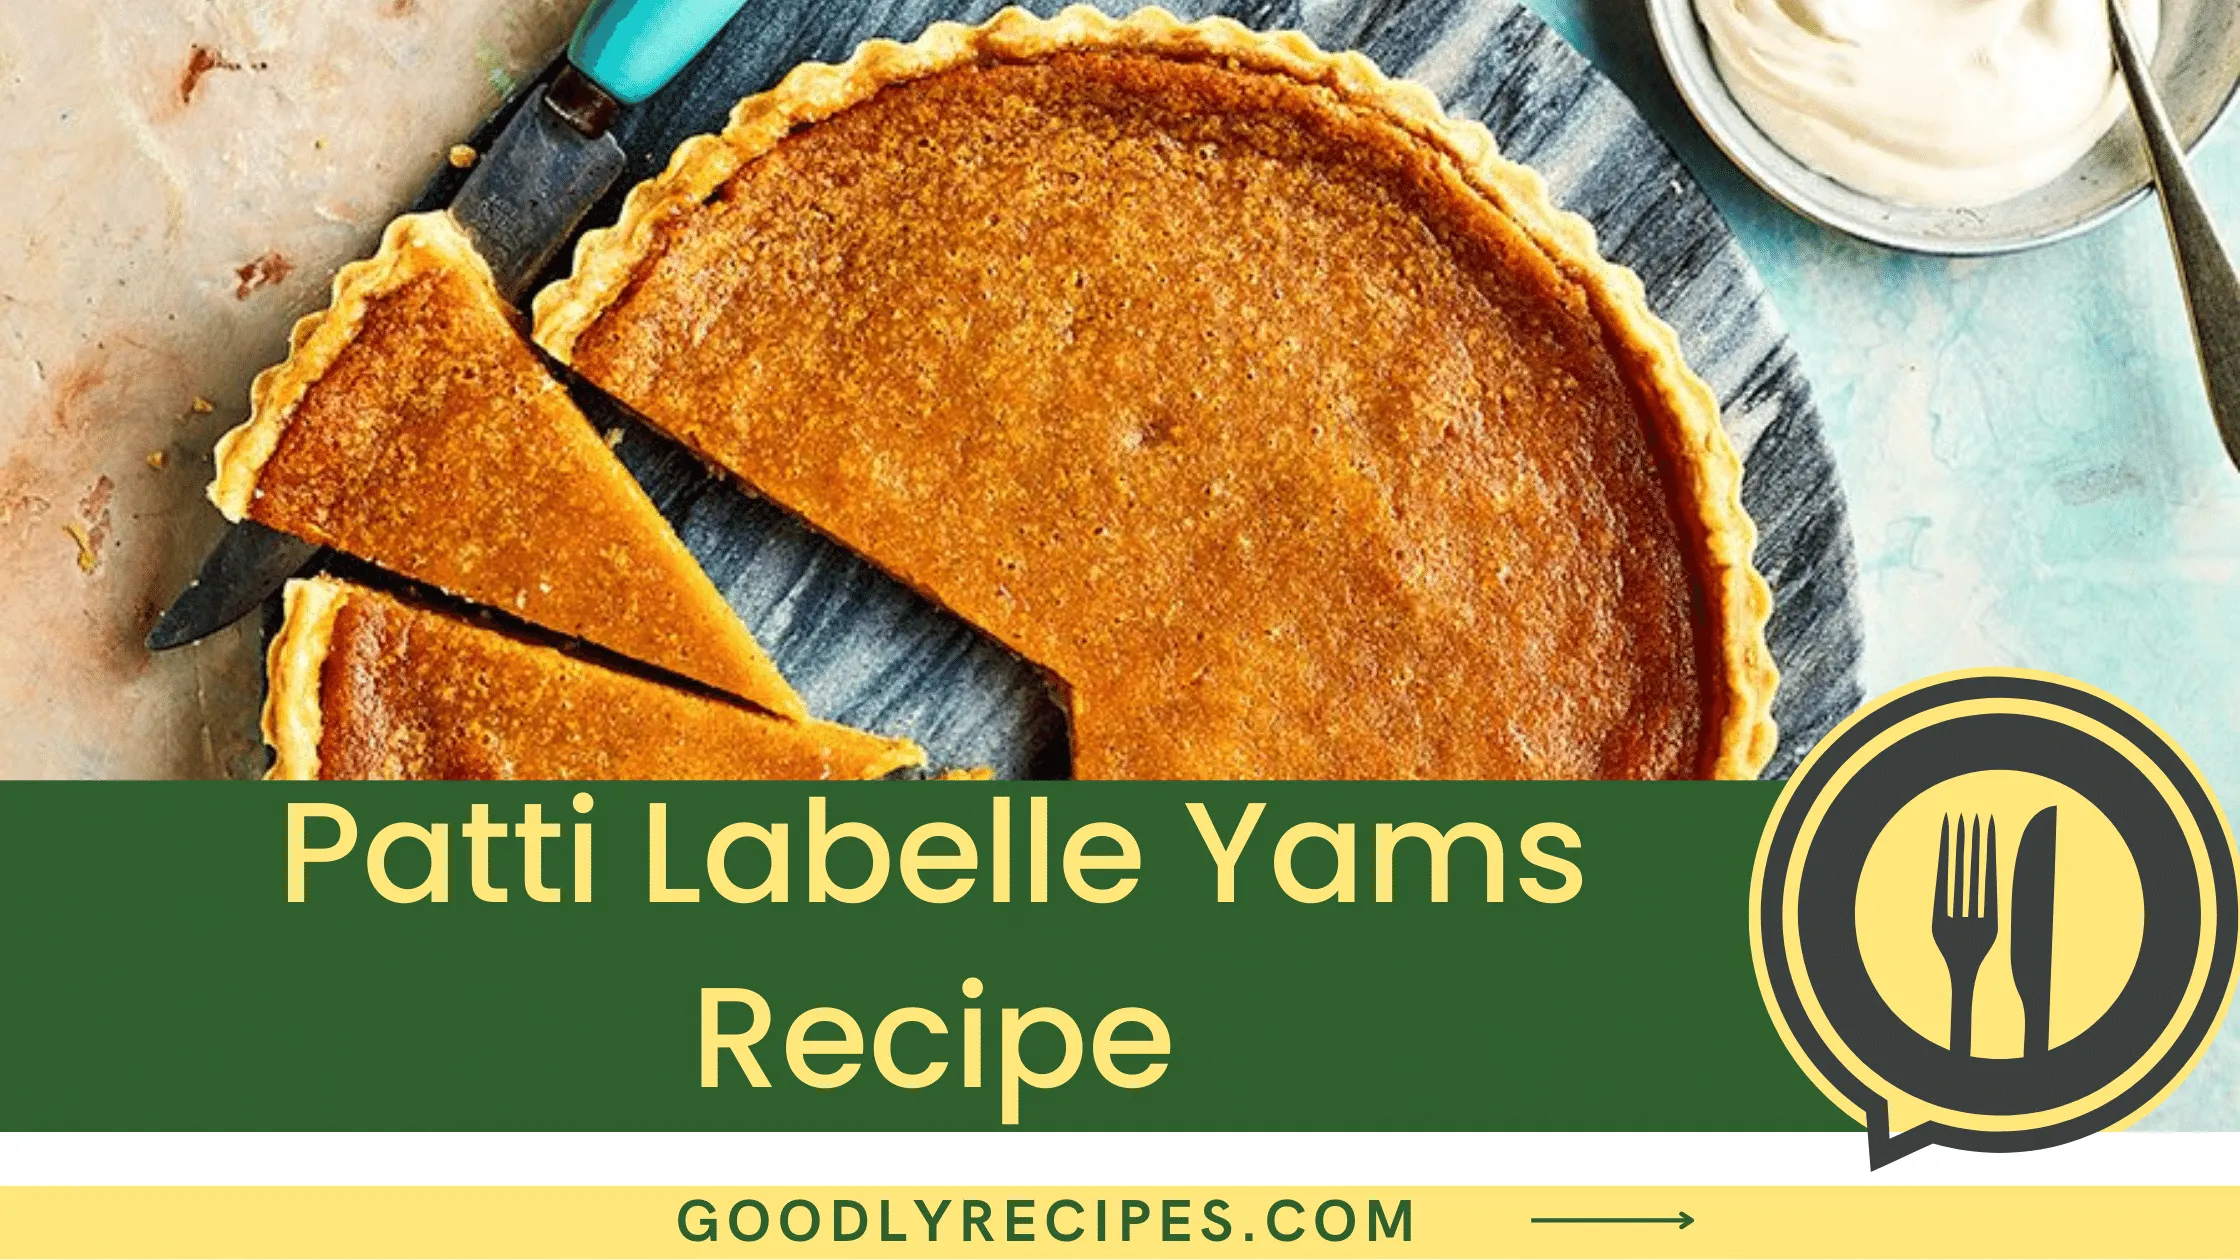 Patti Labelle Yams Recipe